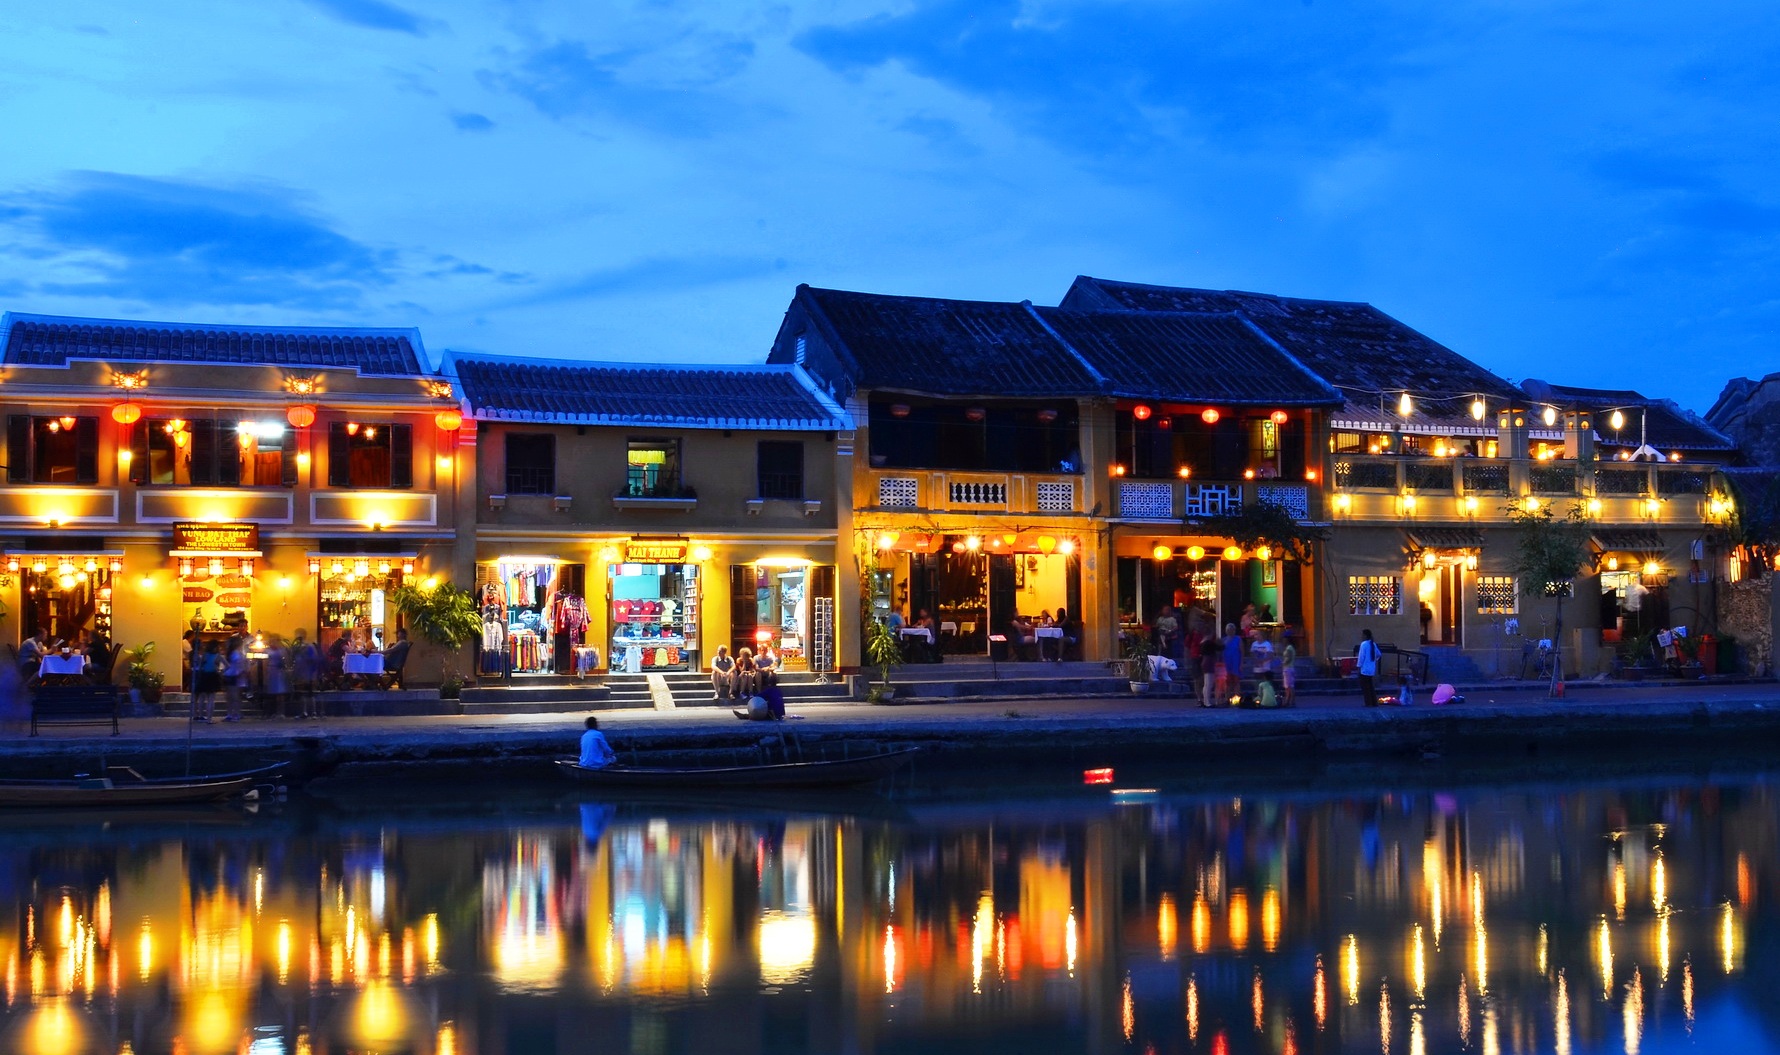 Hoi An ancient town by the Thu Bon river